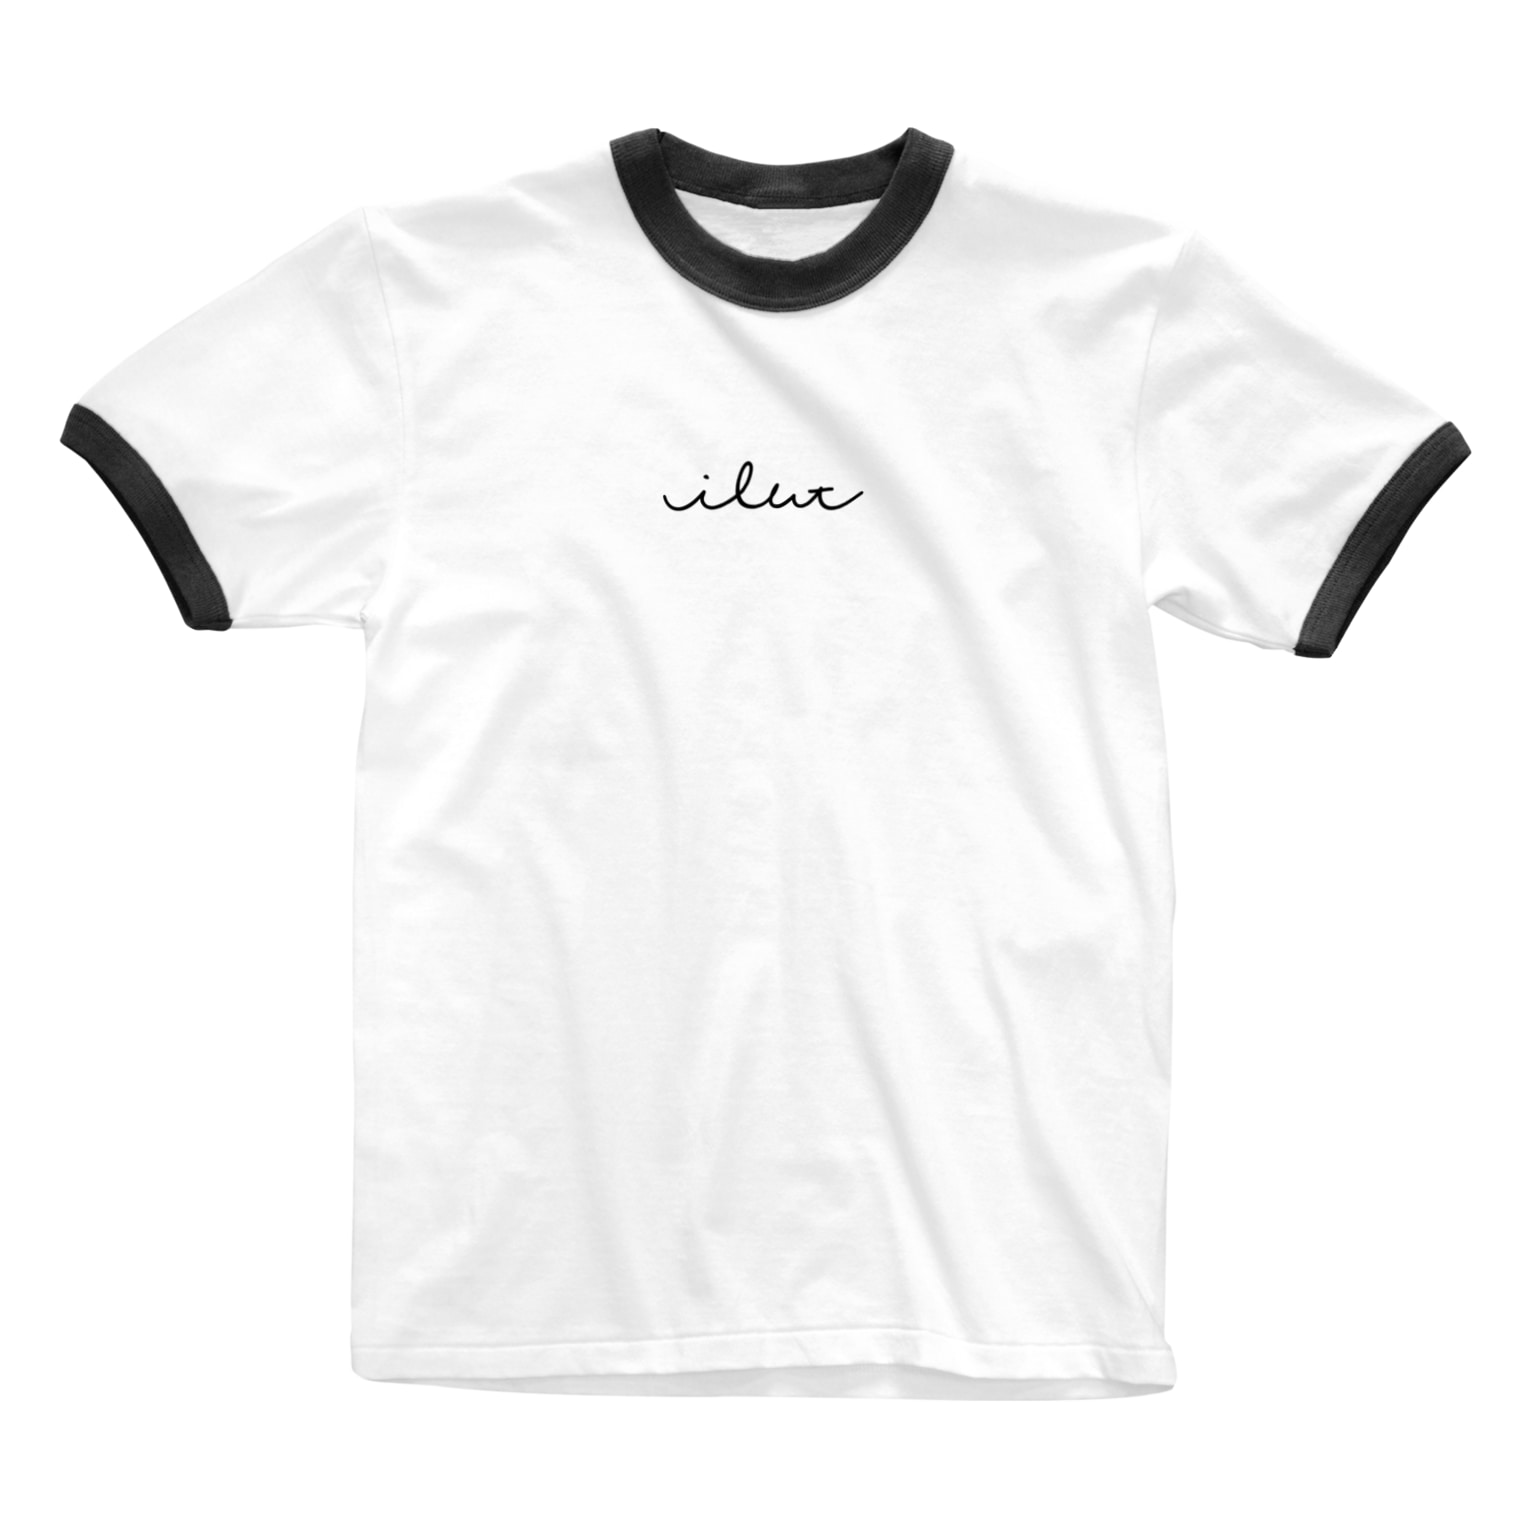 筆記体のようで適当な曲線 シリーズ Harucaのリンガーtシャツ通販